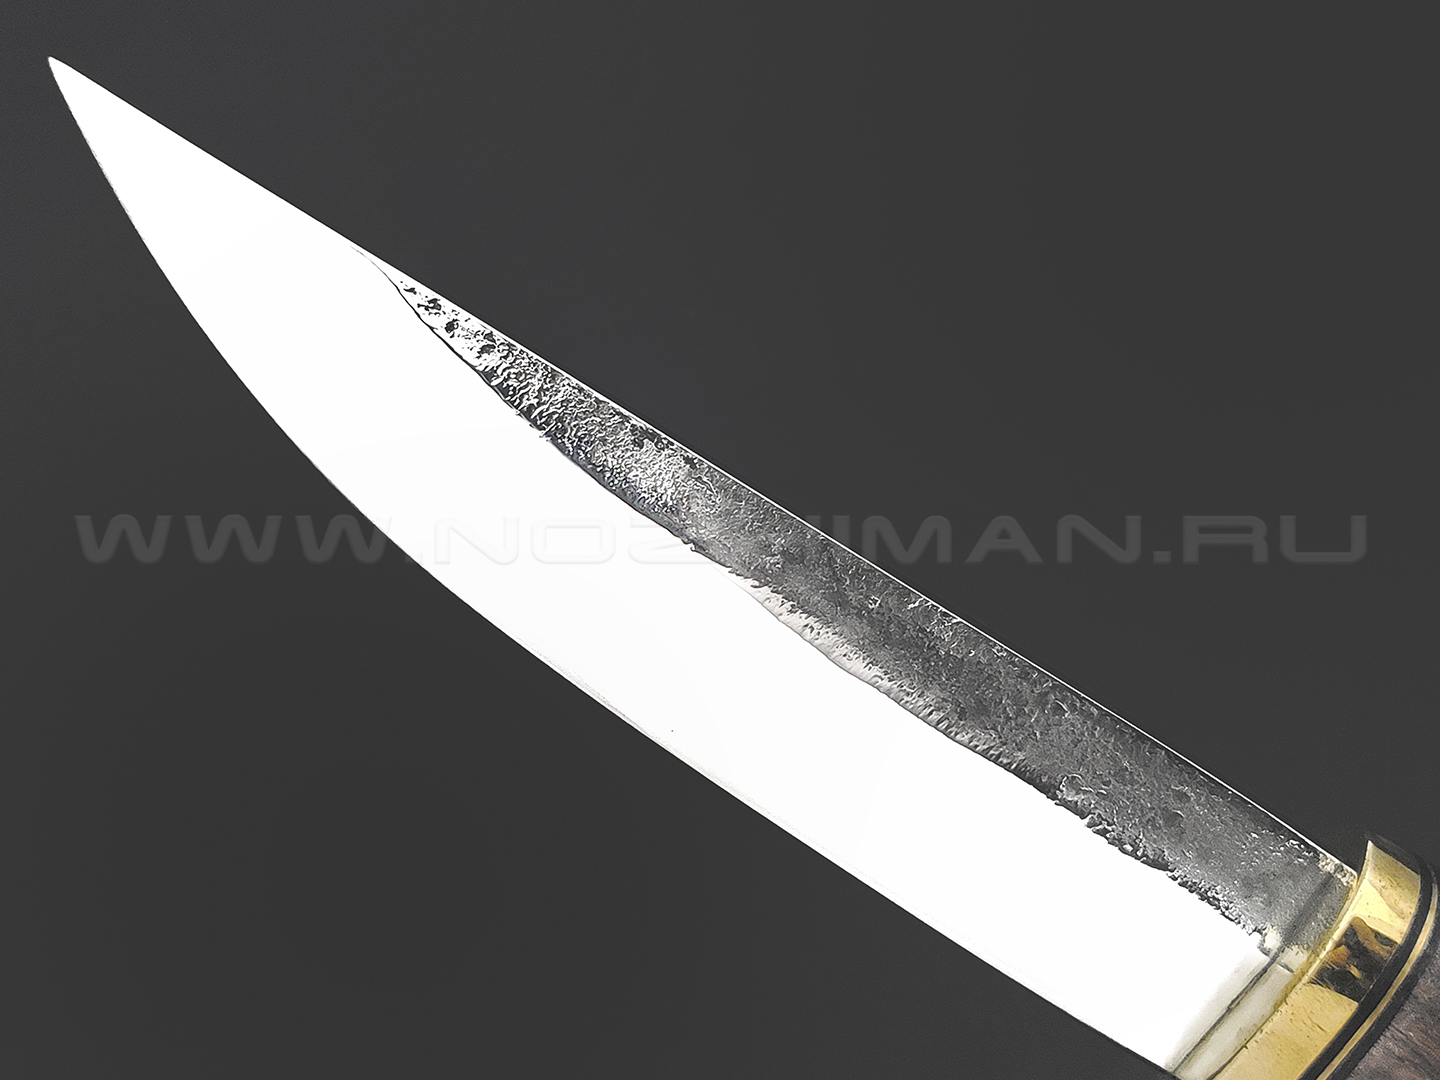 Товарищество Завьялова нож Якут-М сталь К340, рукоять Карельская береза коричневая, латунь